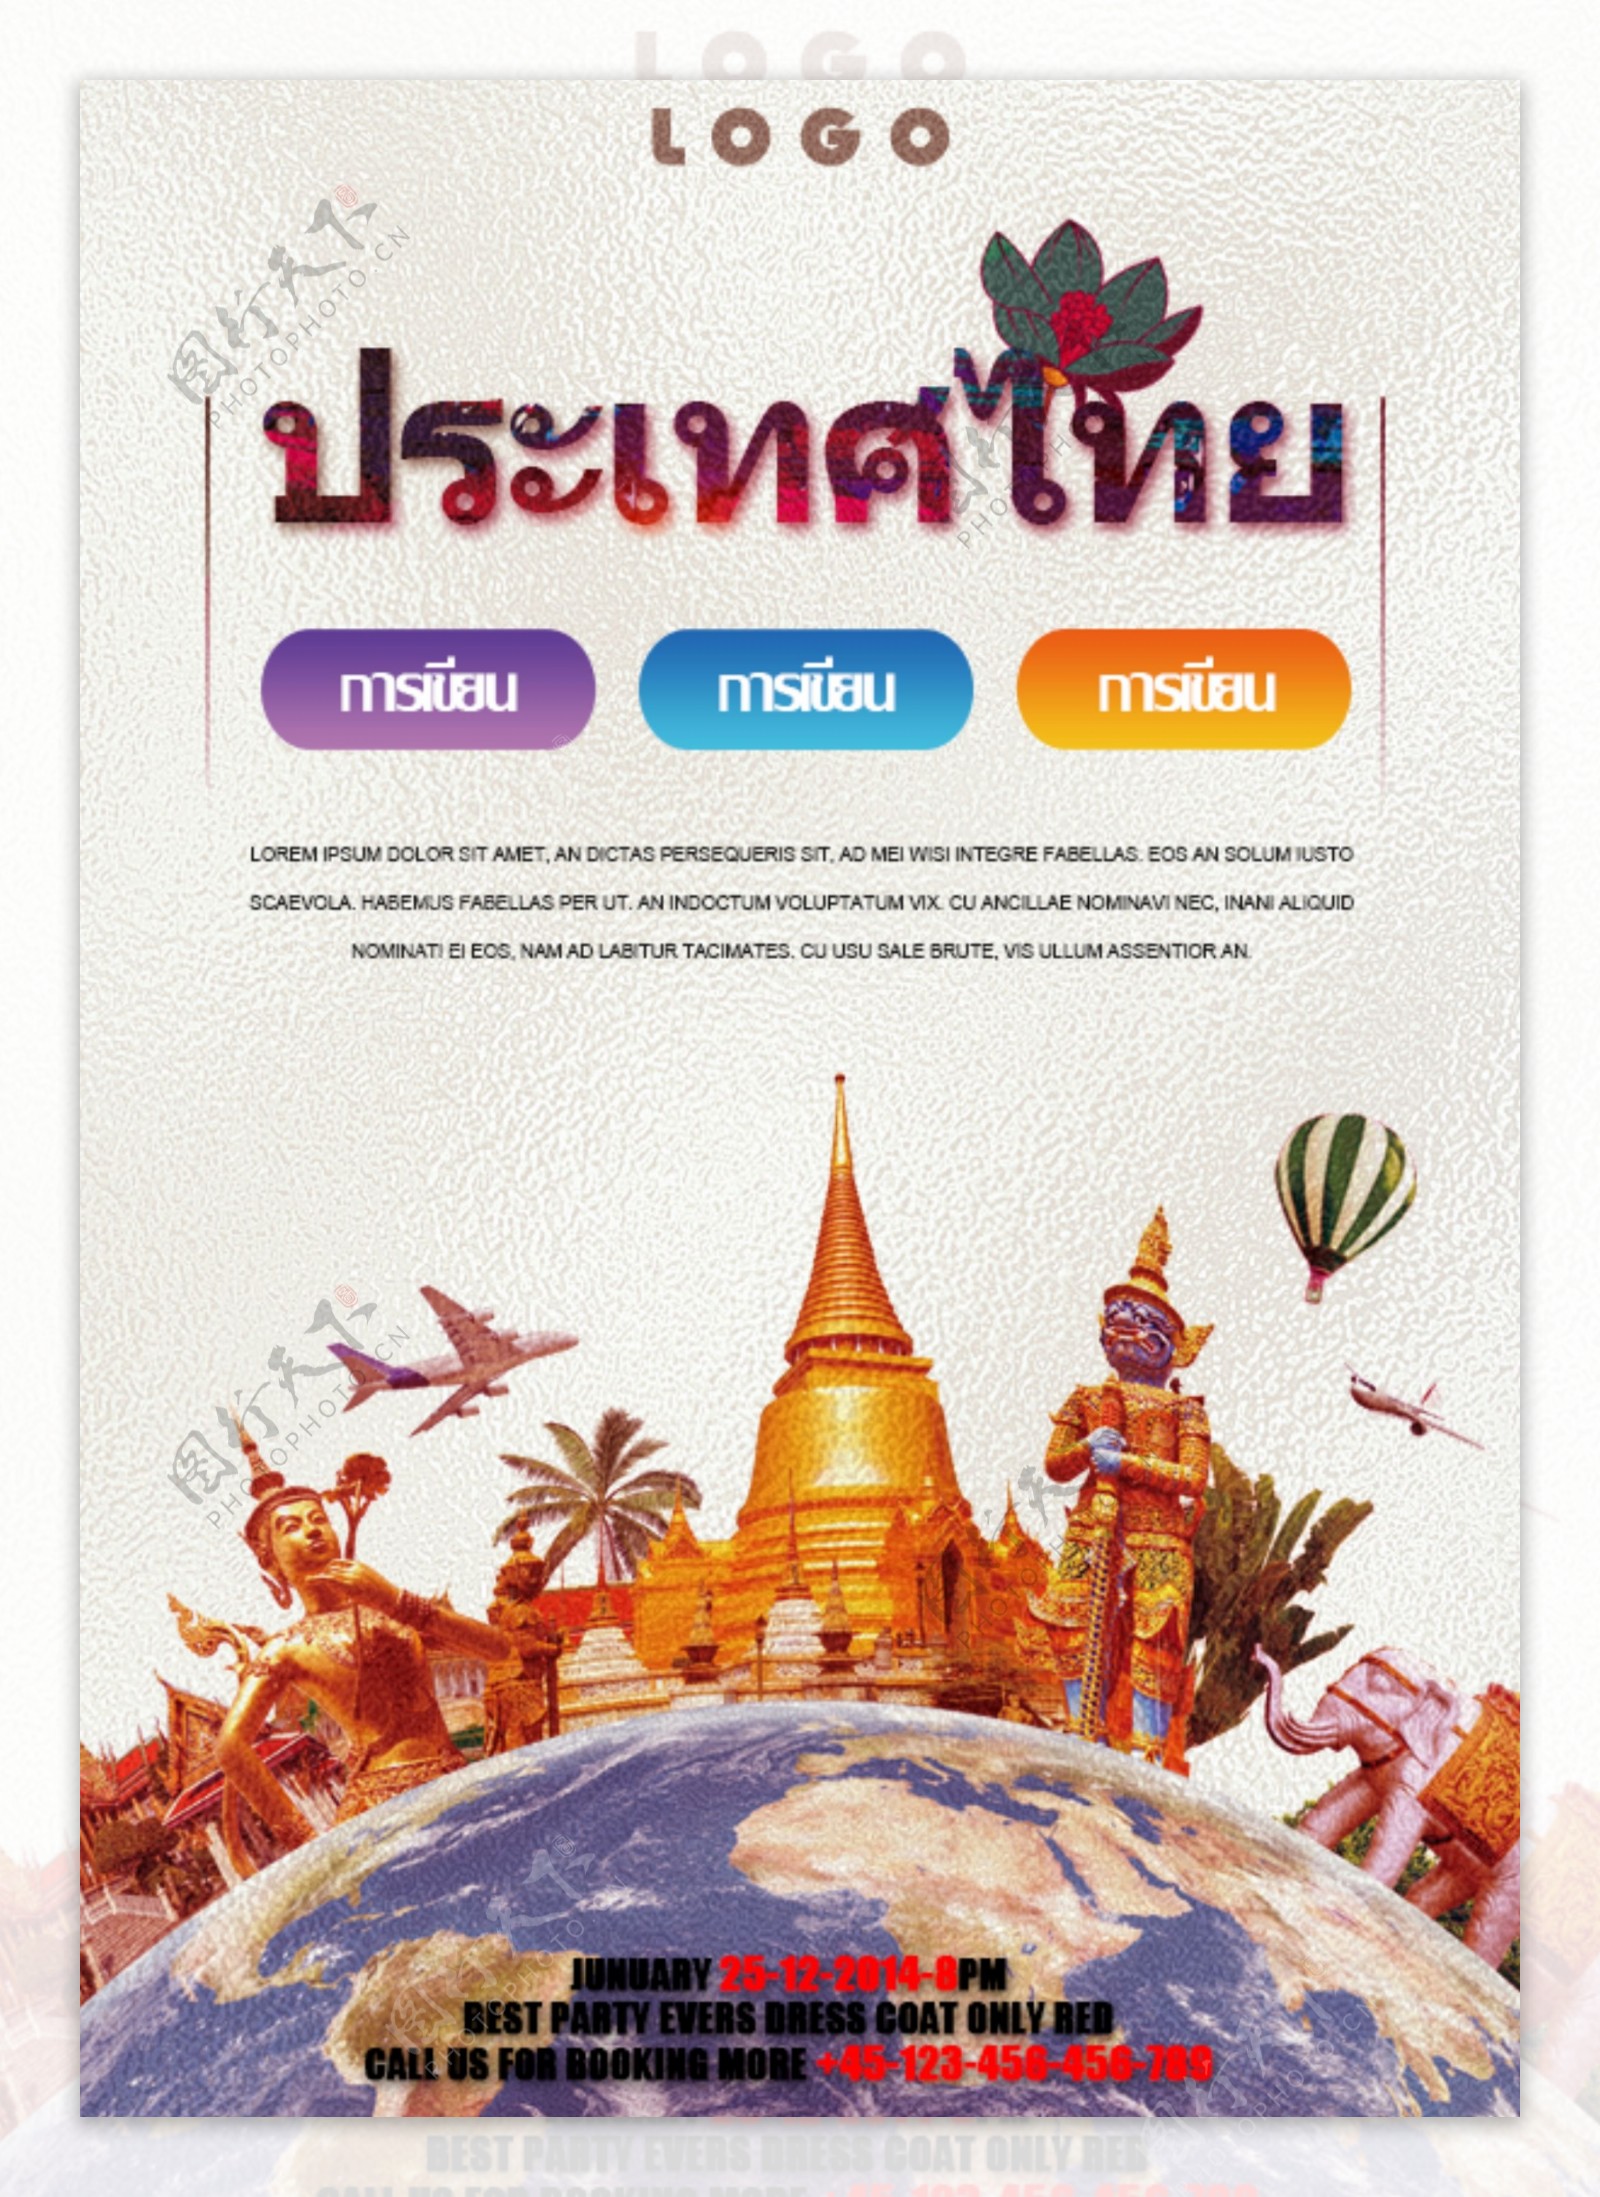 泰国旅游景点的宣传